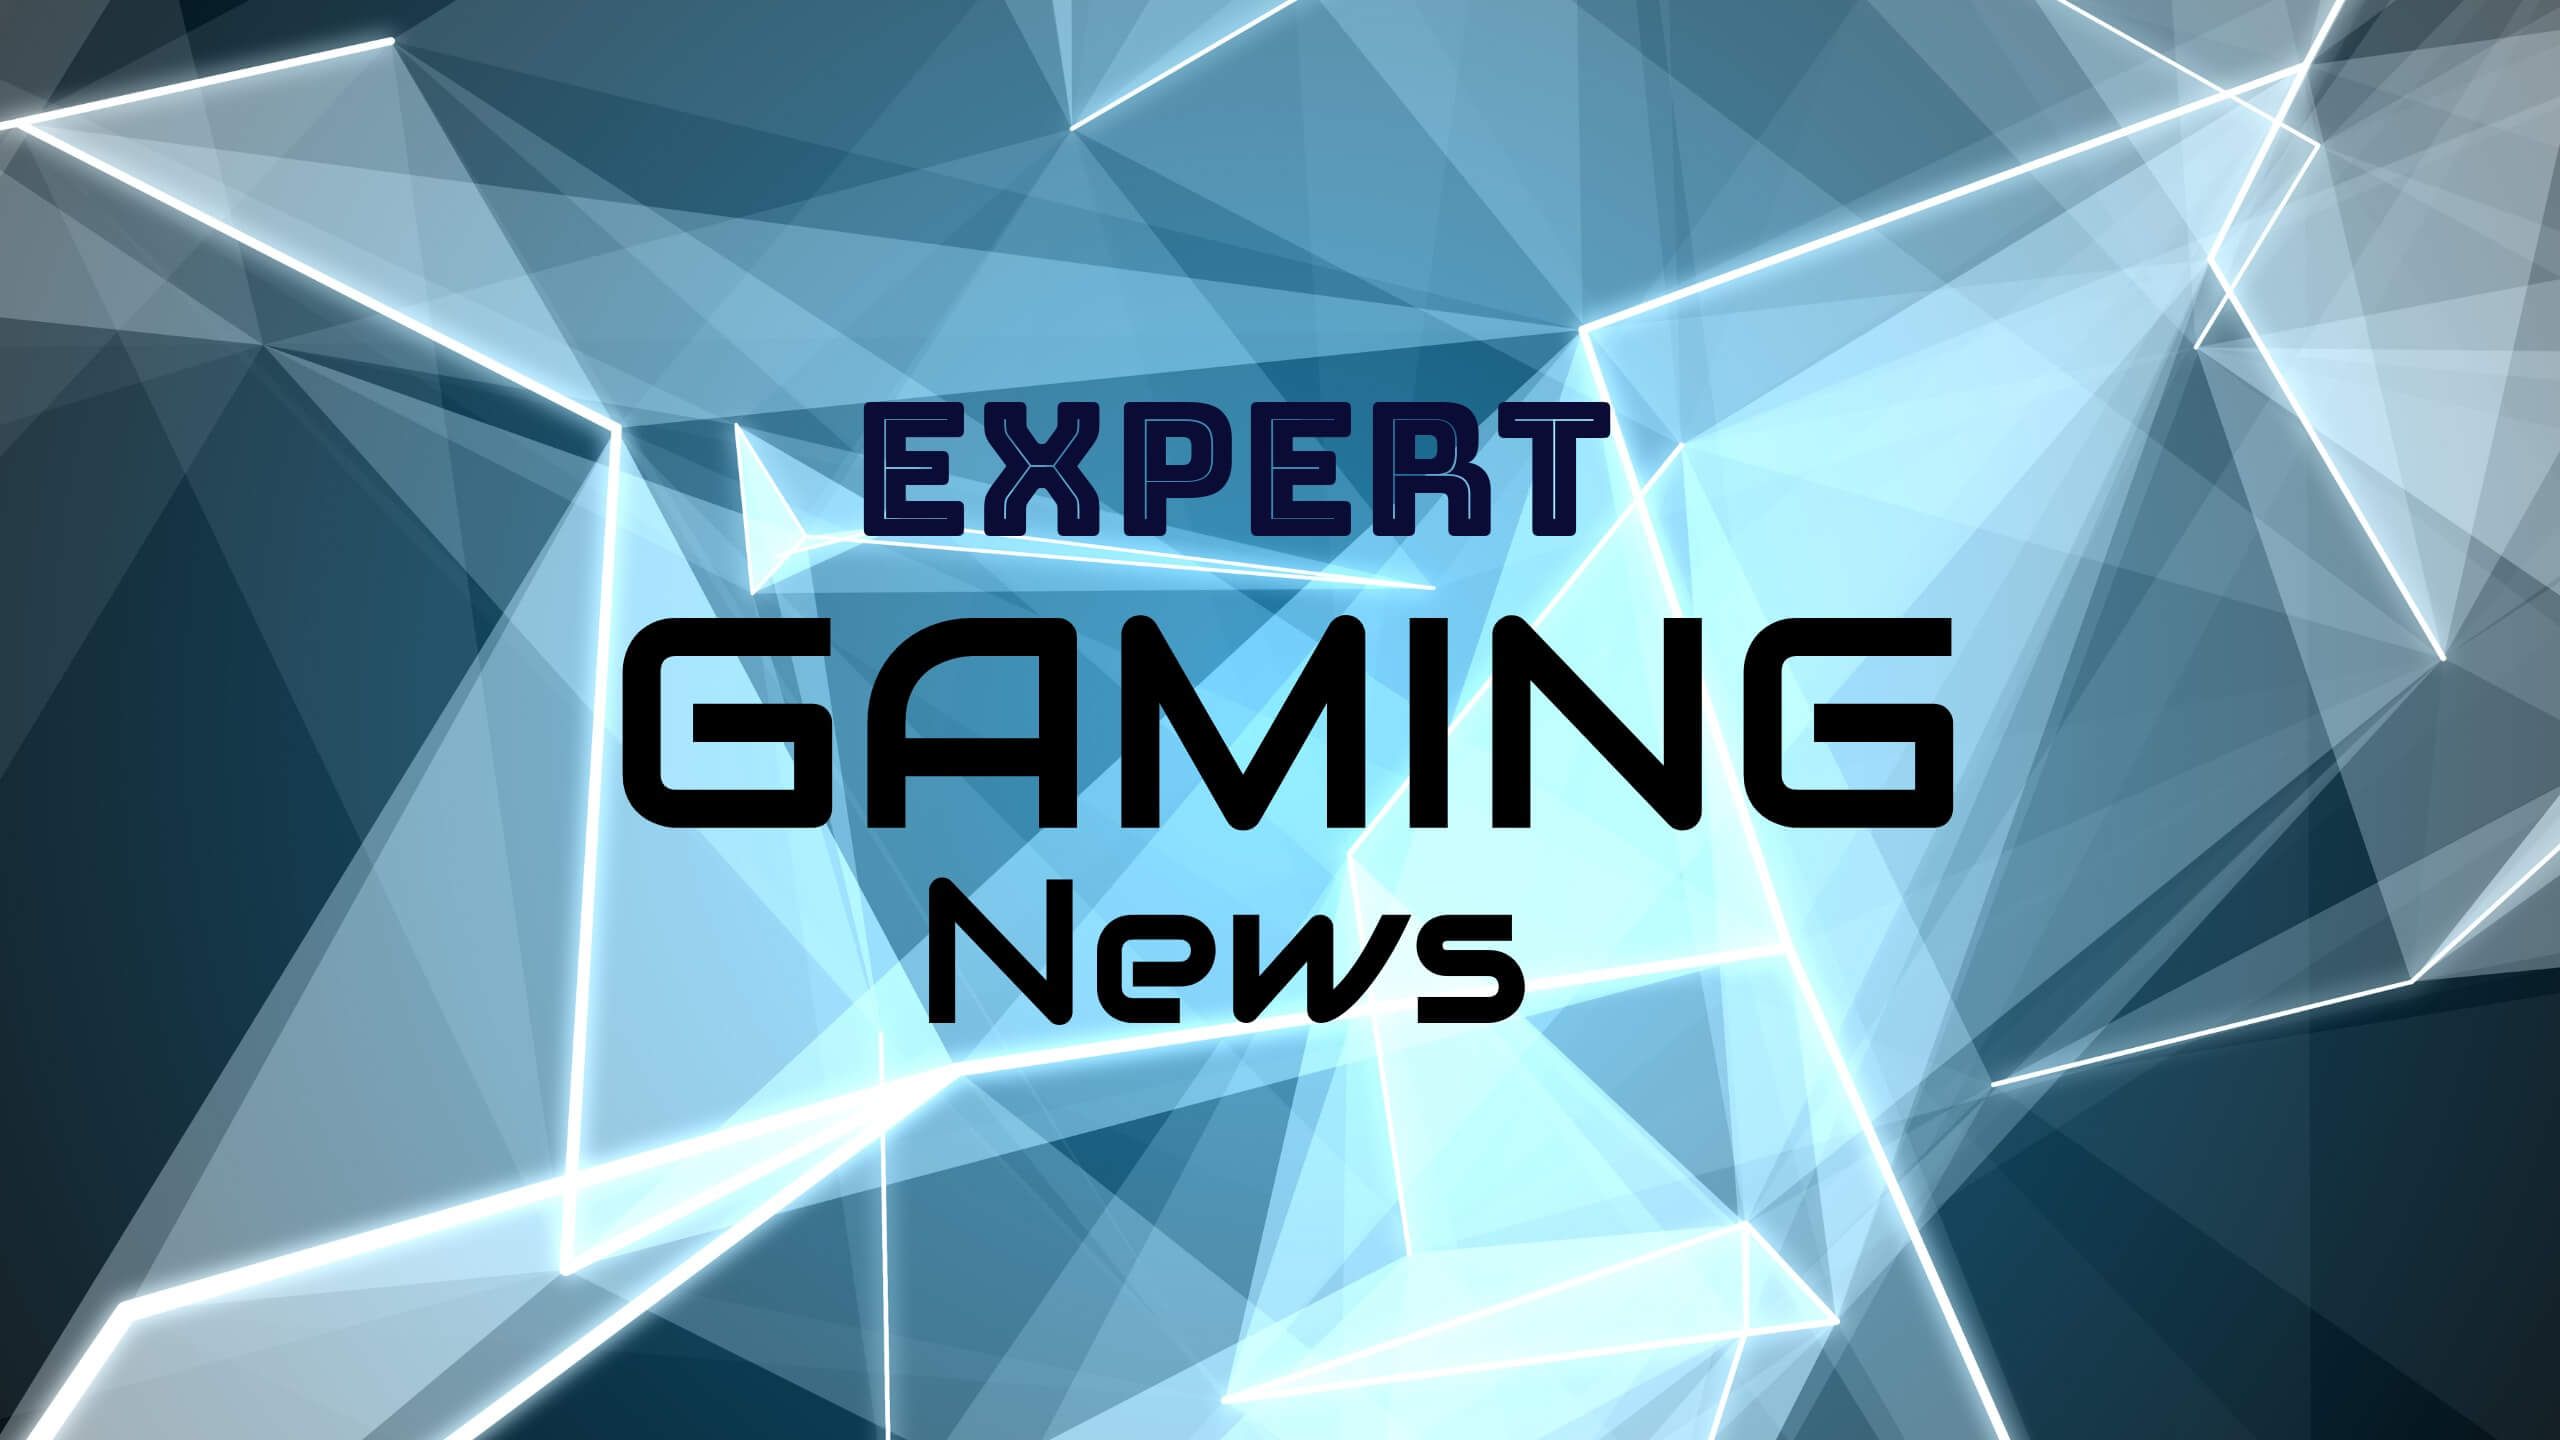 Experten-Gaming-News auf blauem Hintergrund mit Formen – Ideen für Gaming-News-YouTube-Kanal – Bild